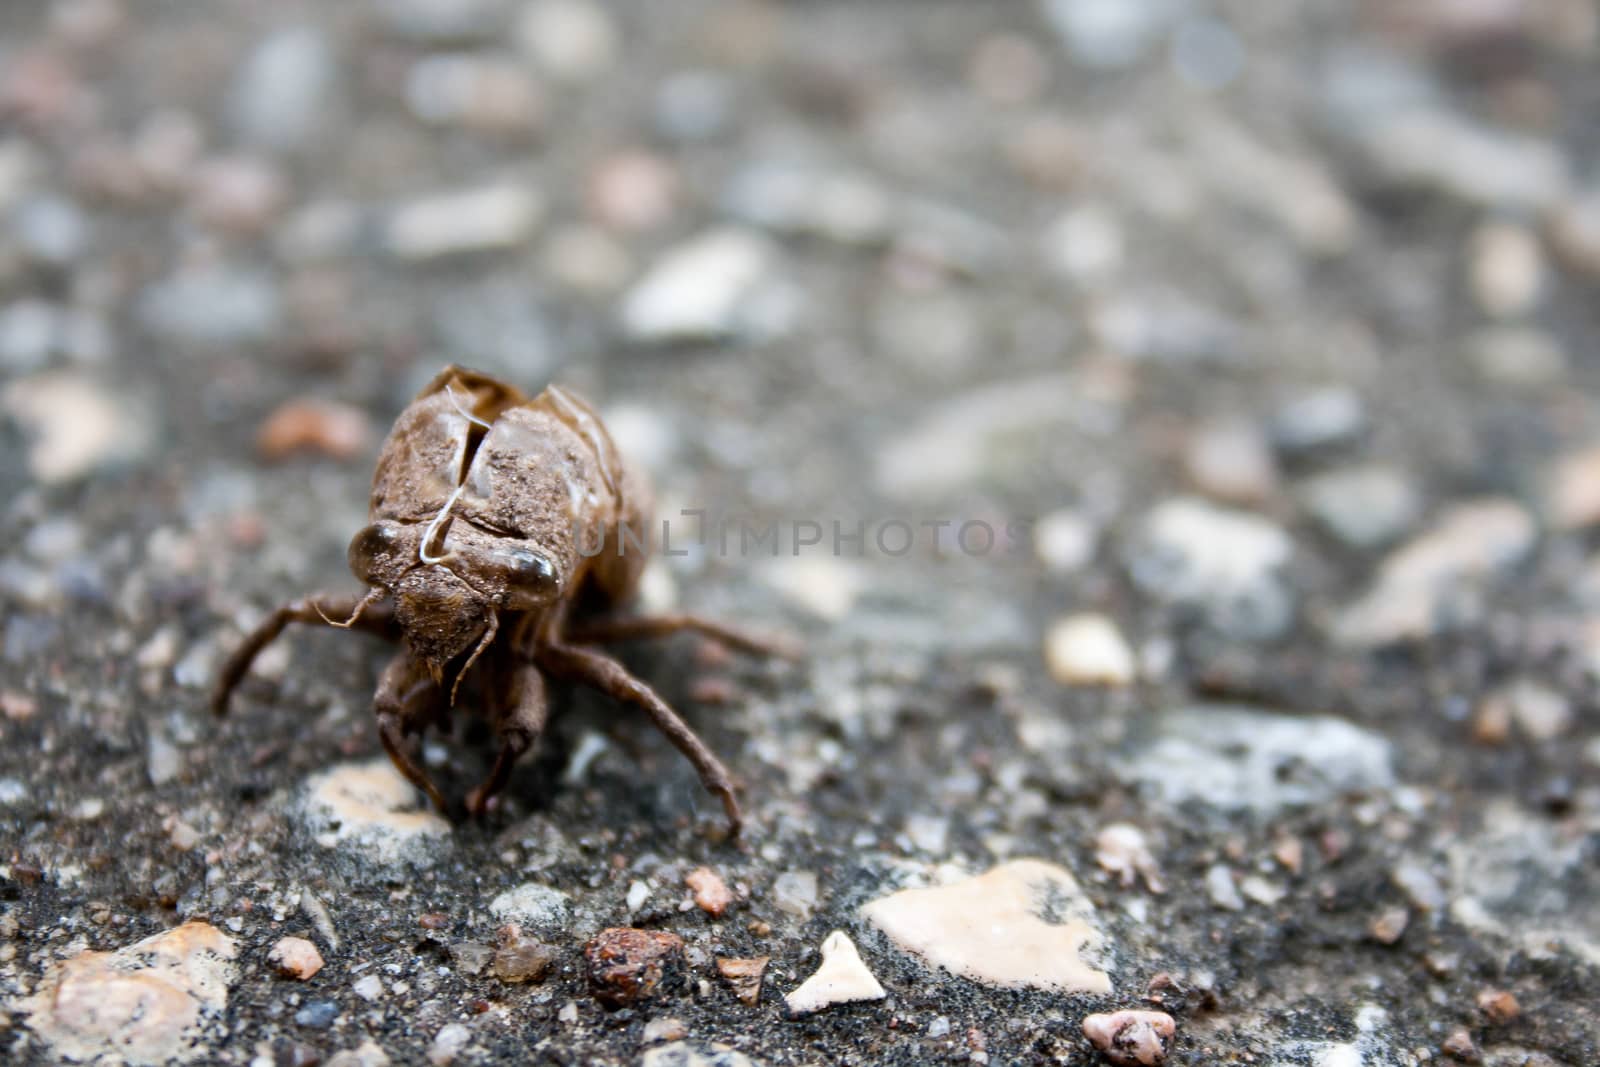 Cicada Exoskeleton on Ground by NikkiGensert